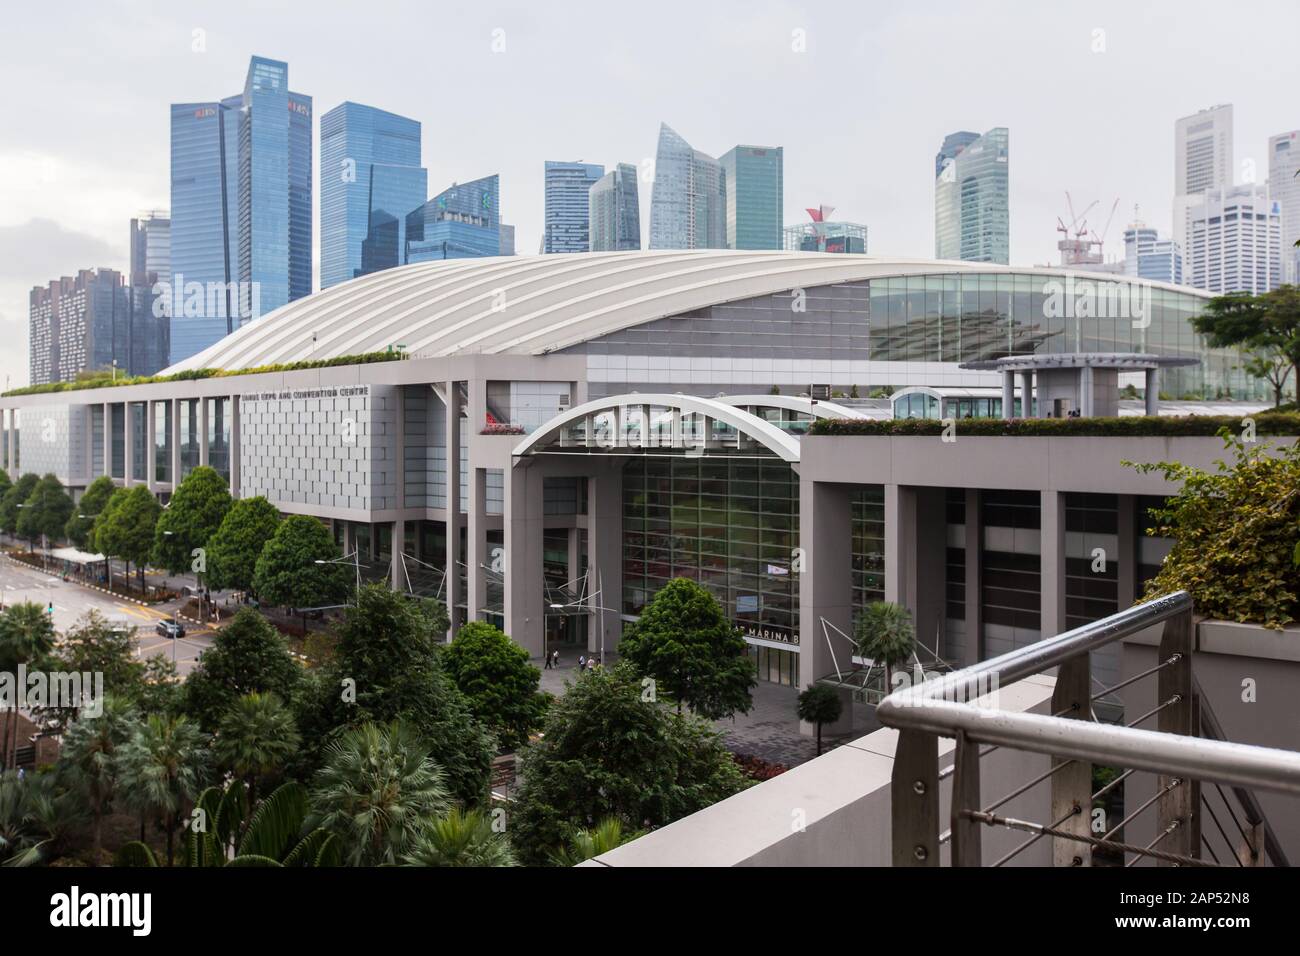 Le centre des congrès et expositions Sands peut accueillir des expositions et événements à grande échelle. Marina Bay Sands, Singapour Banque D'Images